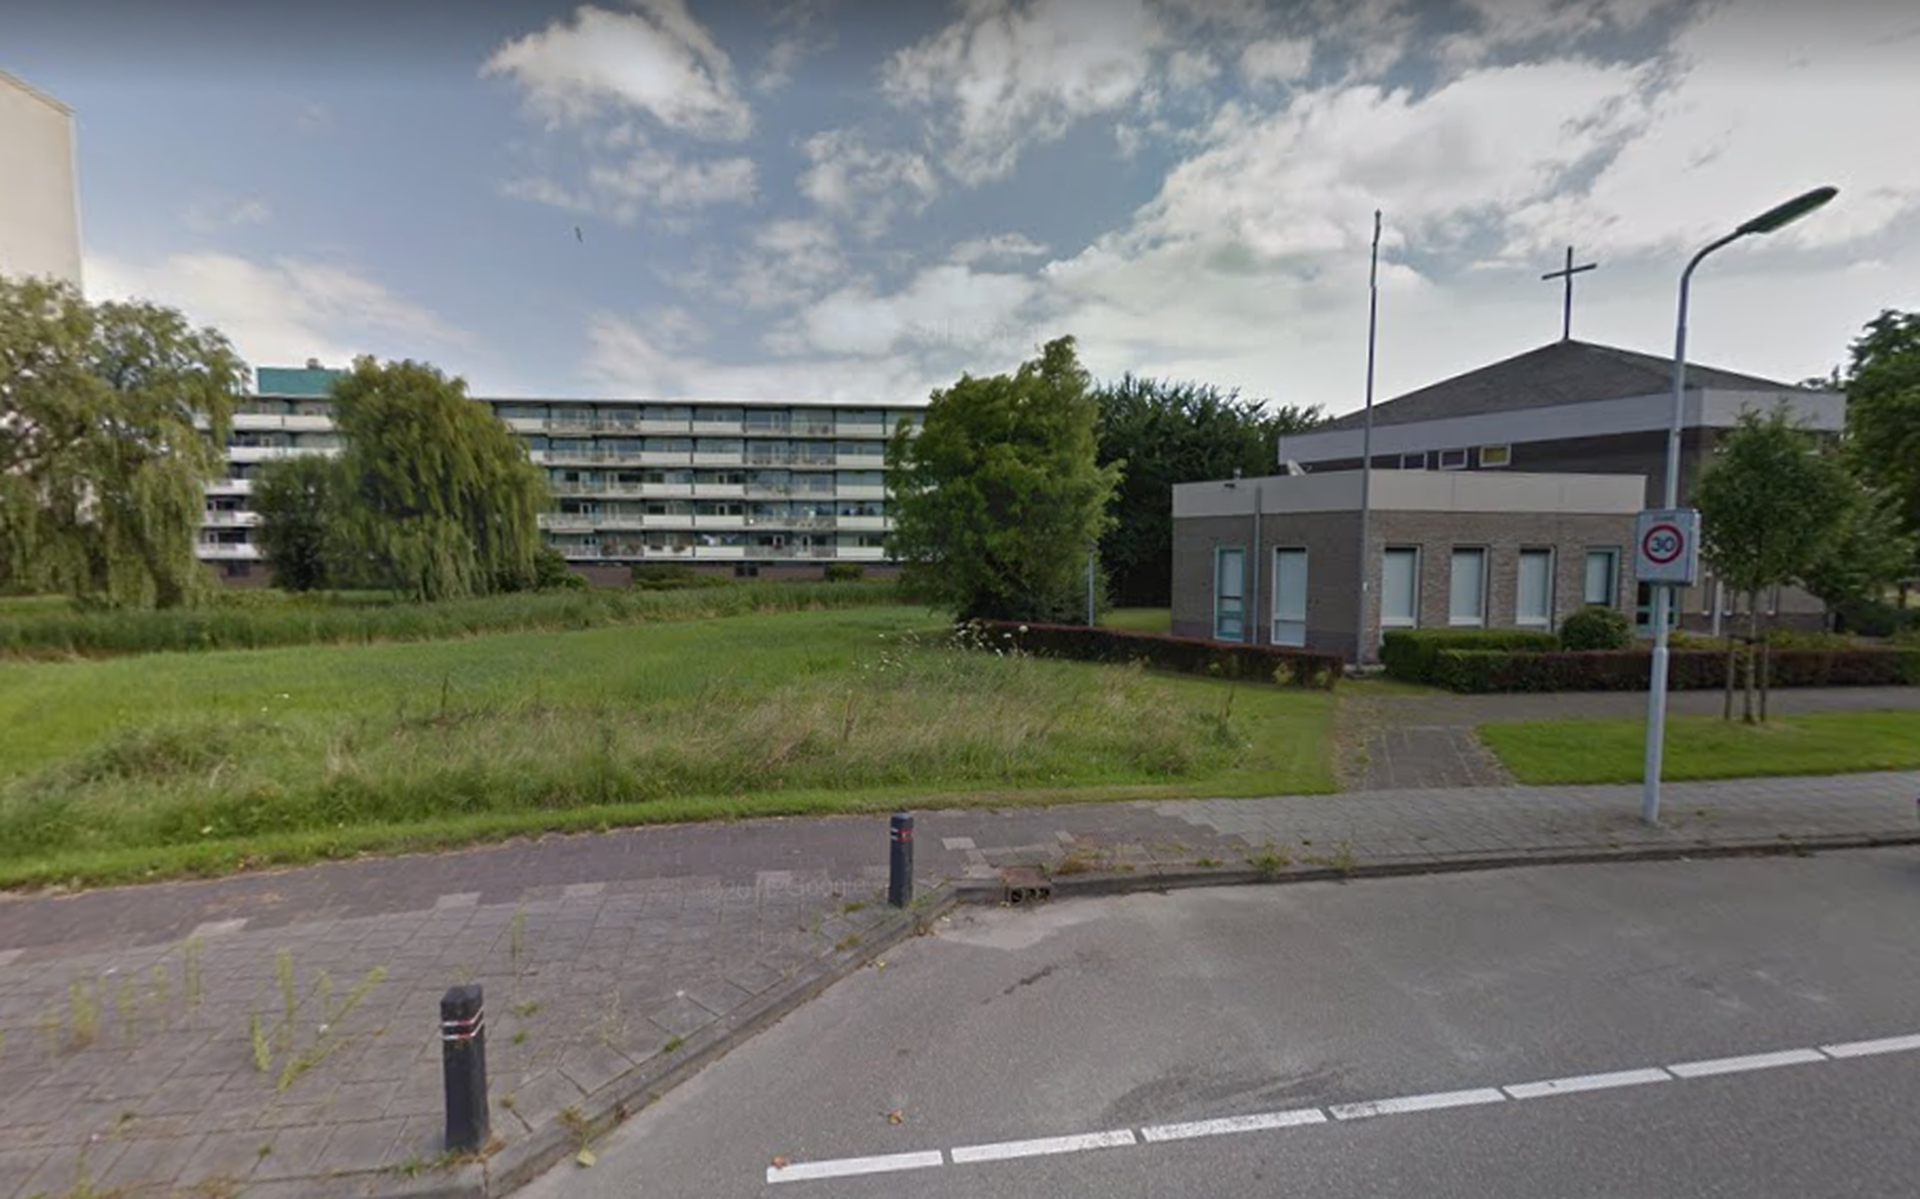 De beoogde locatie in het nieuwe plan voor een cafetaria in Stadsfenne. Foto: Google Street View